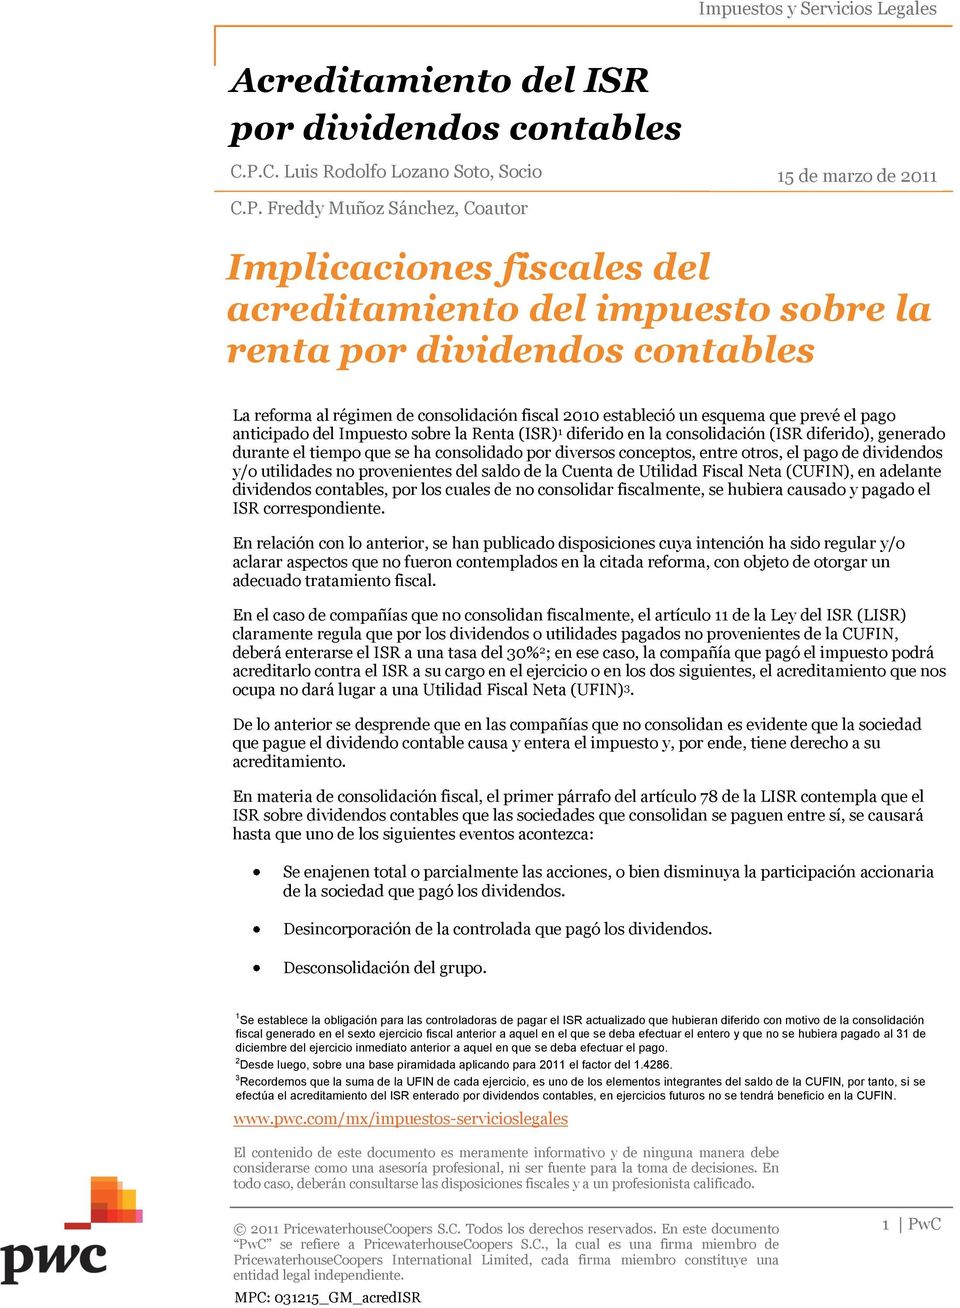 Freddy Muñoz Sánchez, Coautor 15 de marzo de 2011 Implicaciones fiscales del acreditamiento del impuesto sobre la renta por dividendos contables La reforma al régimen de consolidación fiscal 2010